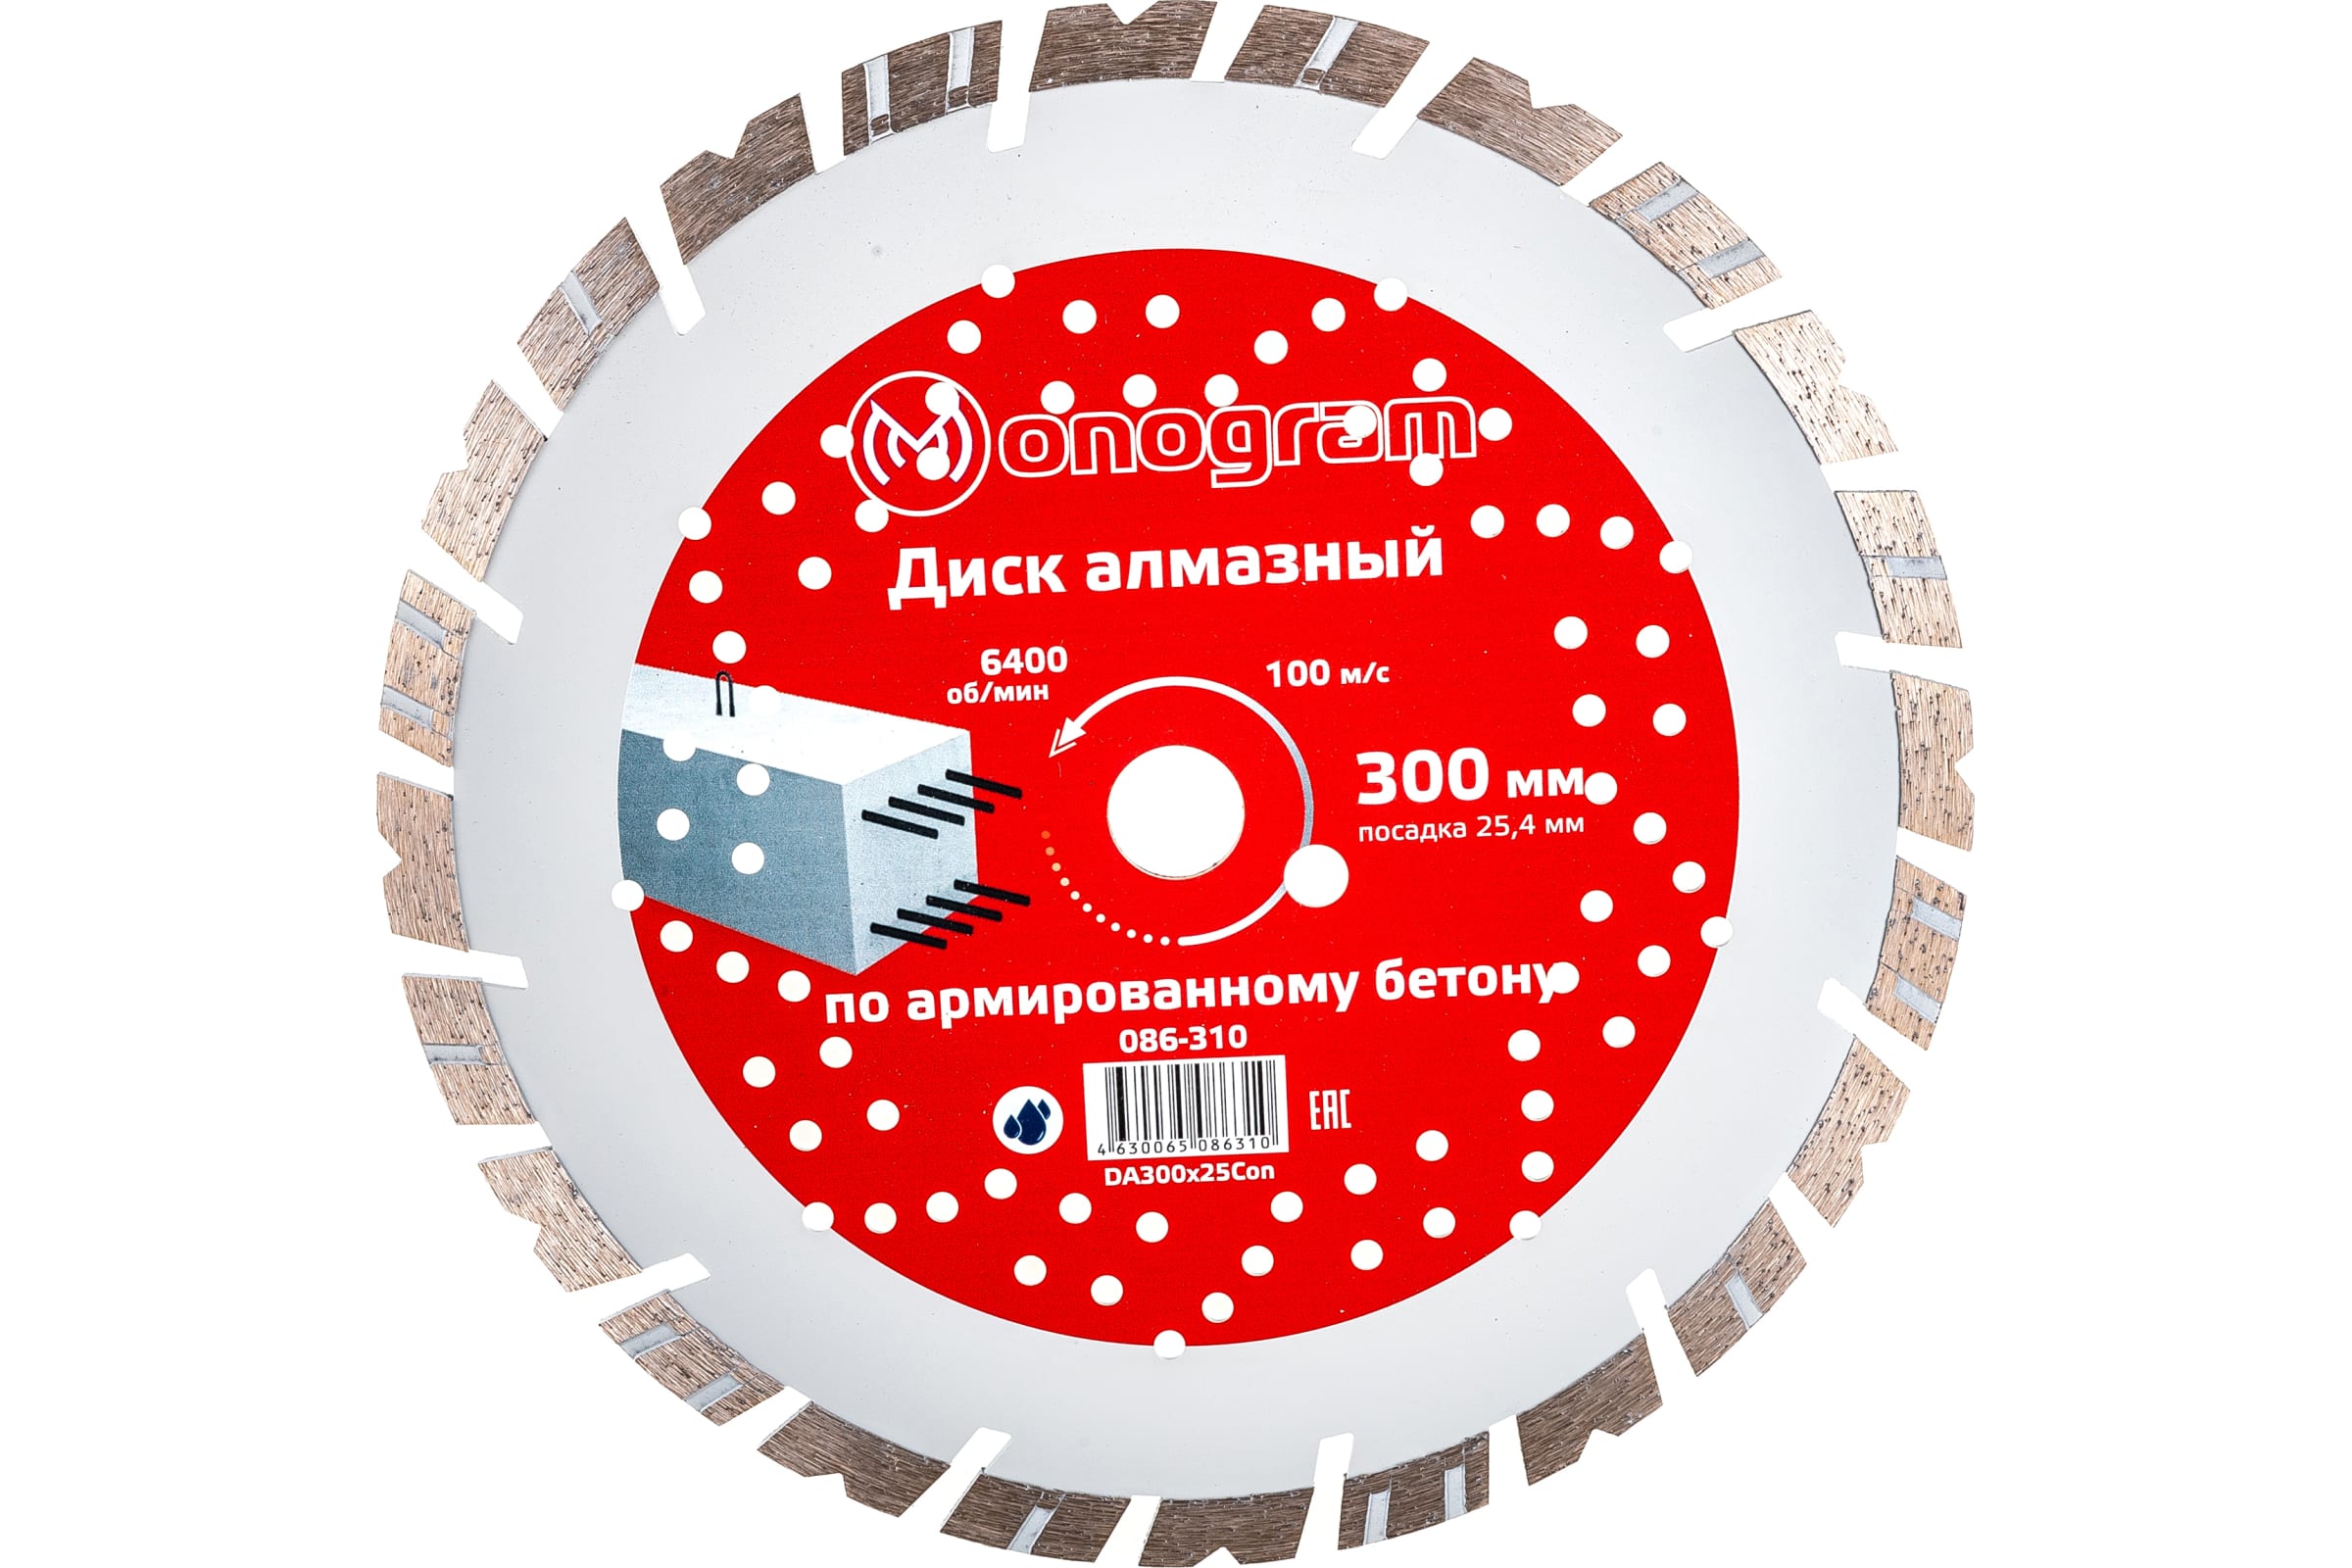 MONOGRAM Диск алмазный турбосегментный Special 300х25,4мм 086-310 турбосегментный алмазный диск по железобетону messer